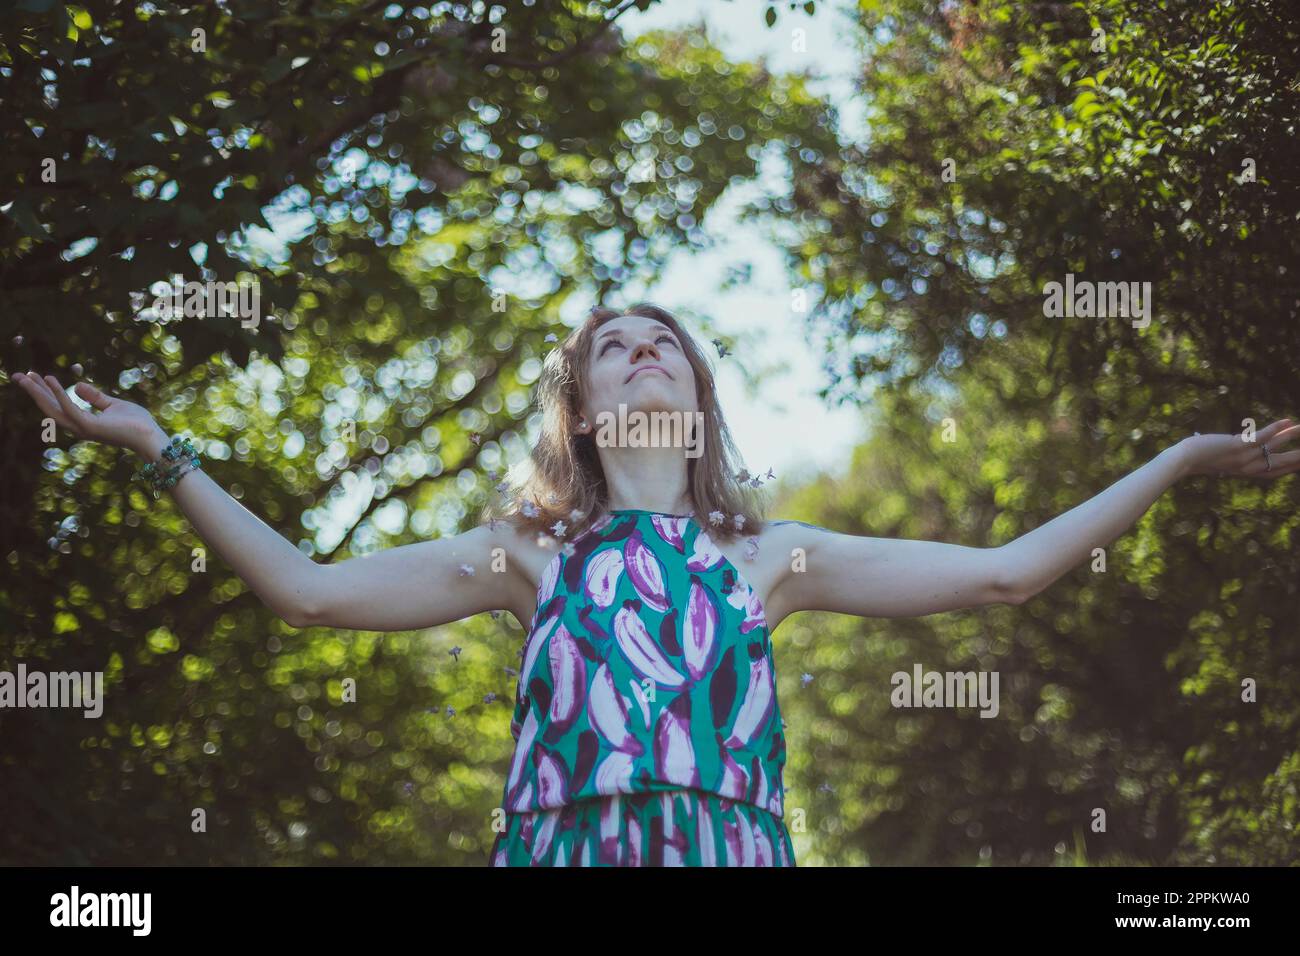 Glückliches Mädchen im Sommerkleid, das seine Arme ausbreitet, malerische Fotografie Stockfoto